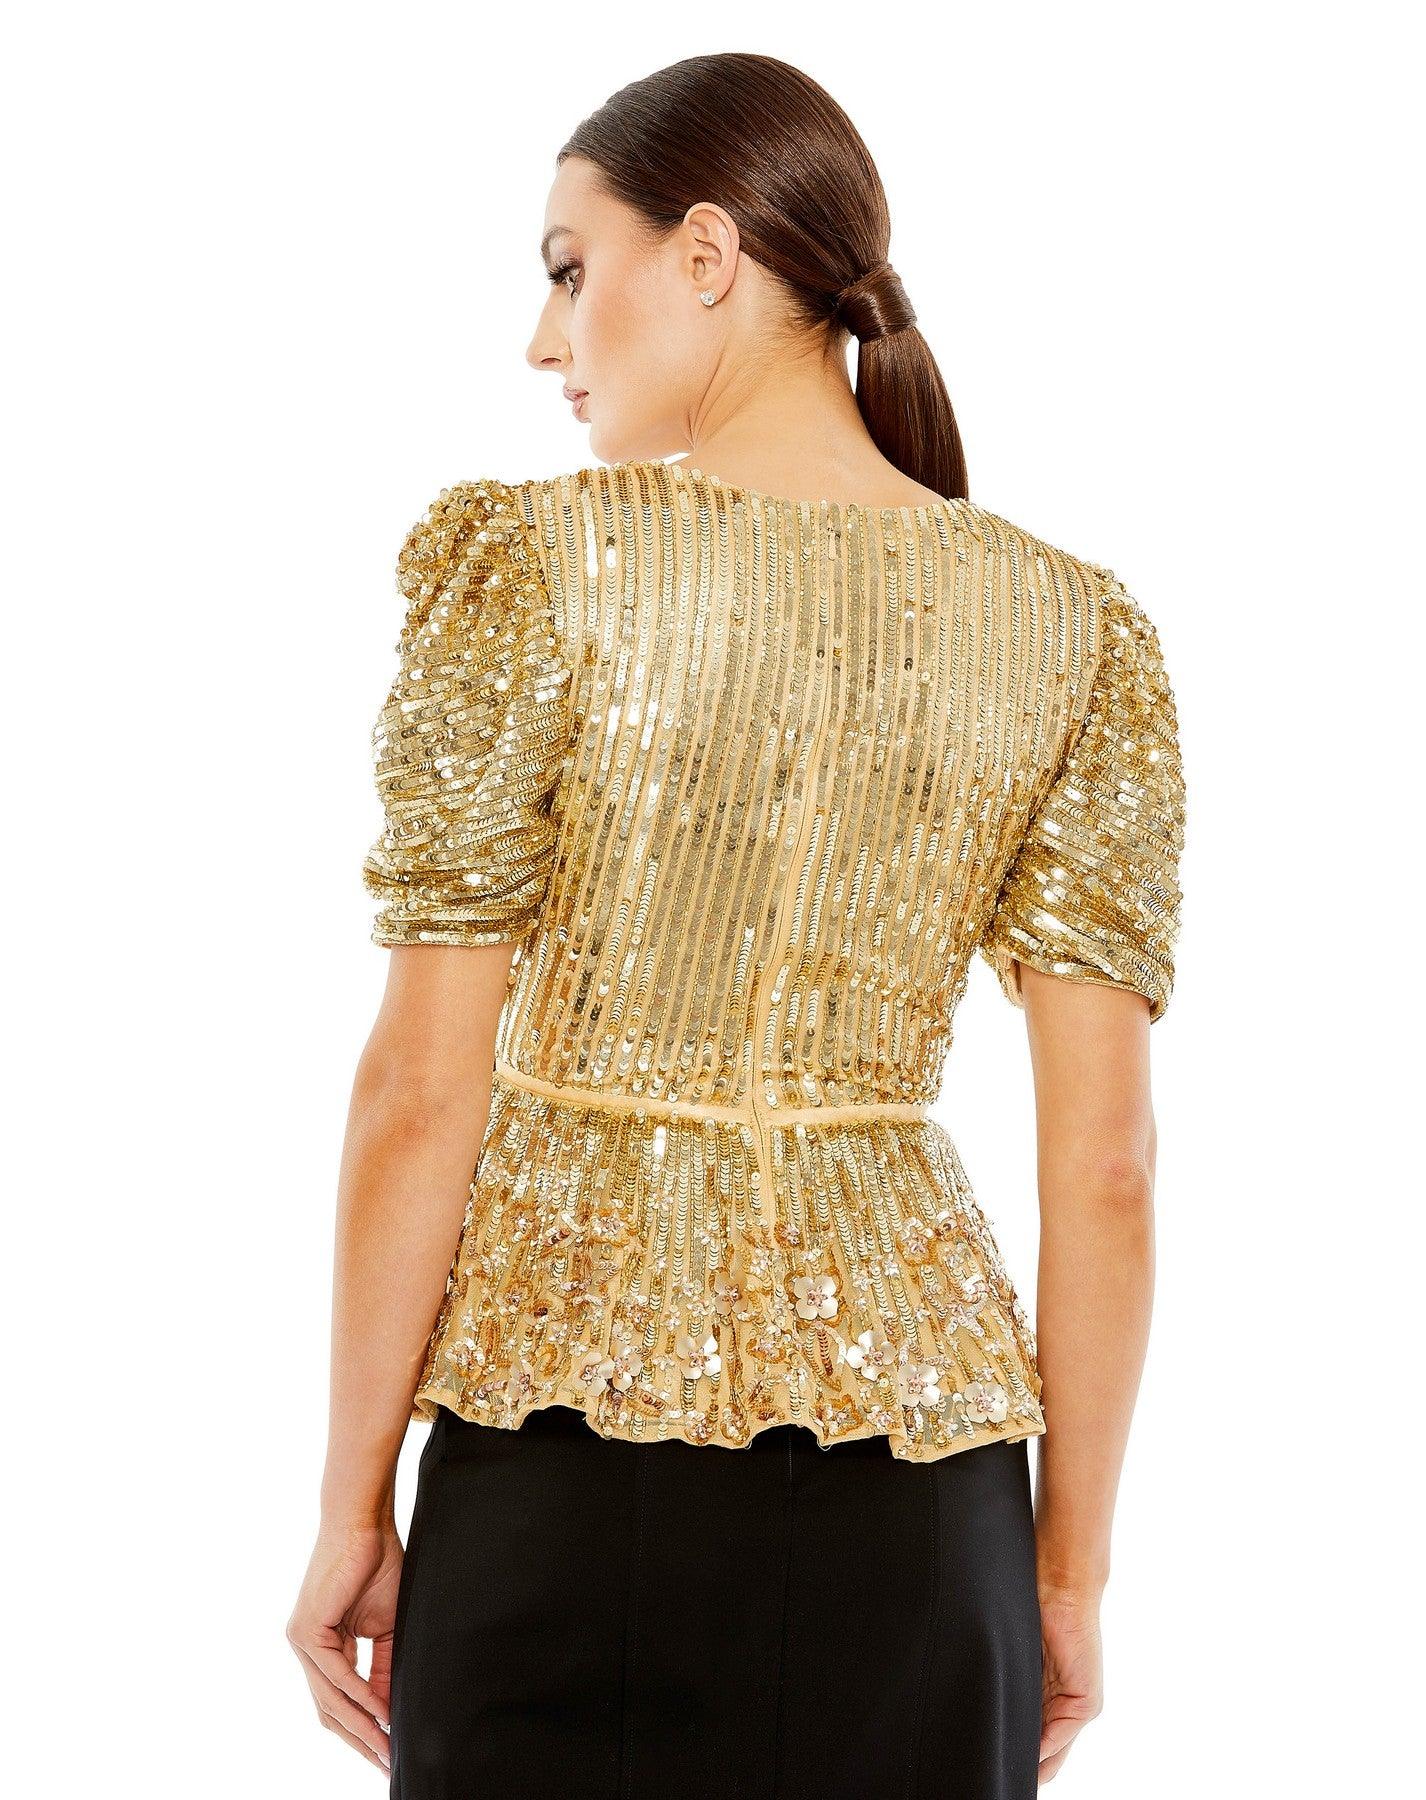 Top Formal Beaded Sequin Short Sleeve Top Gold